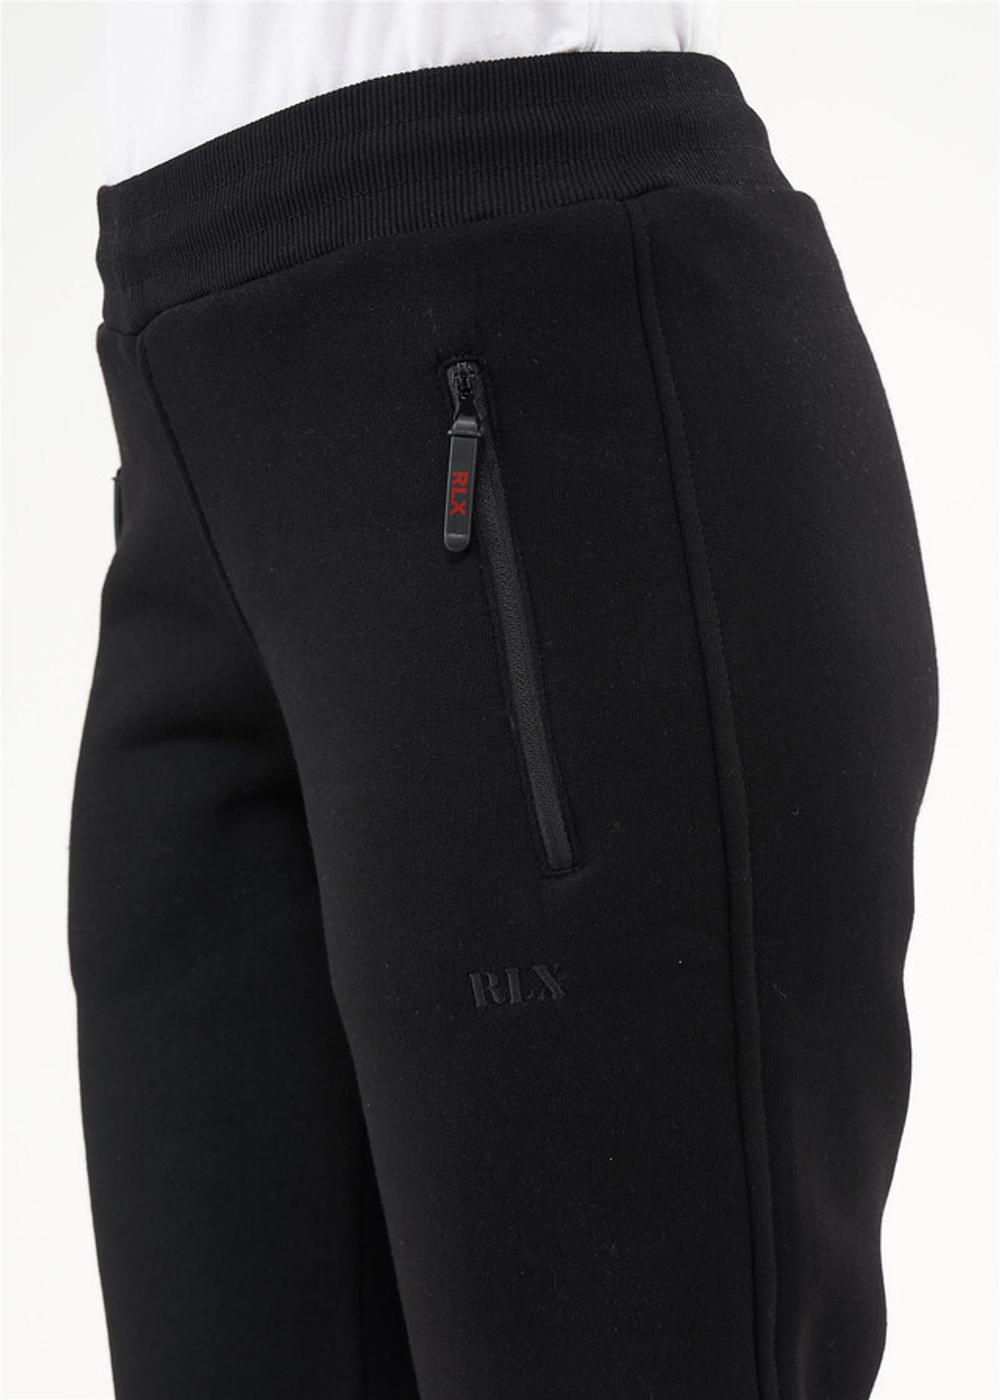 RELAX MODE / Спортивные штаны женские утепленные зимние джоггеры начес - 40069